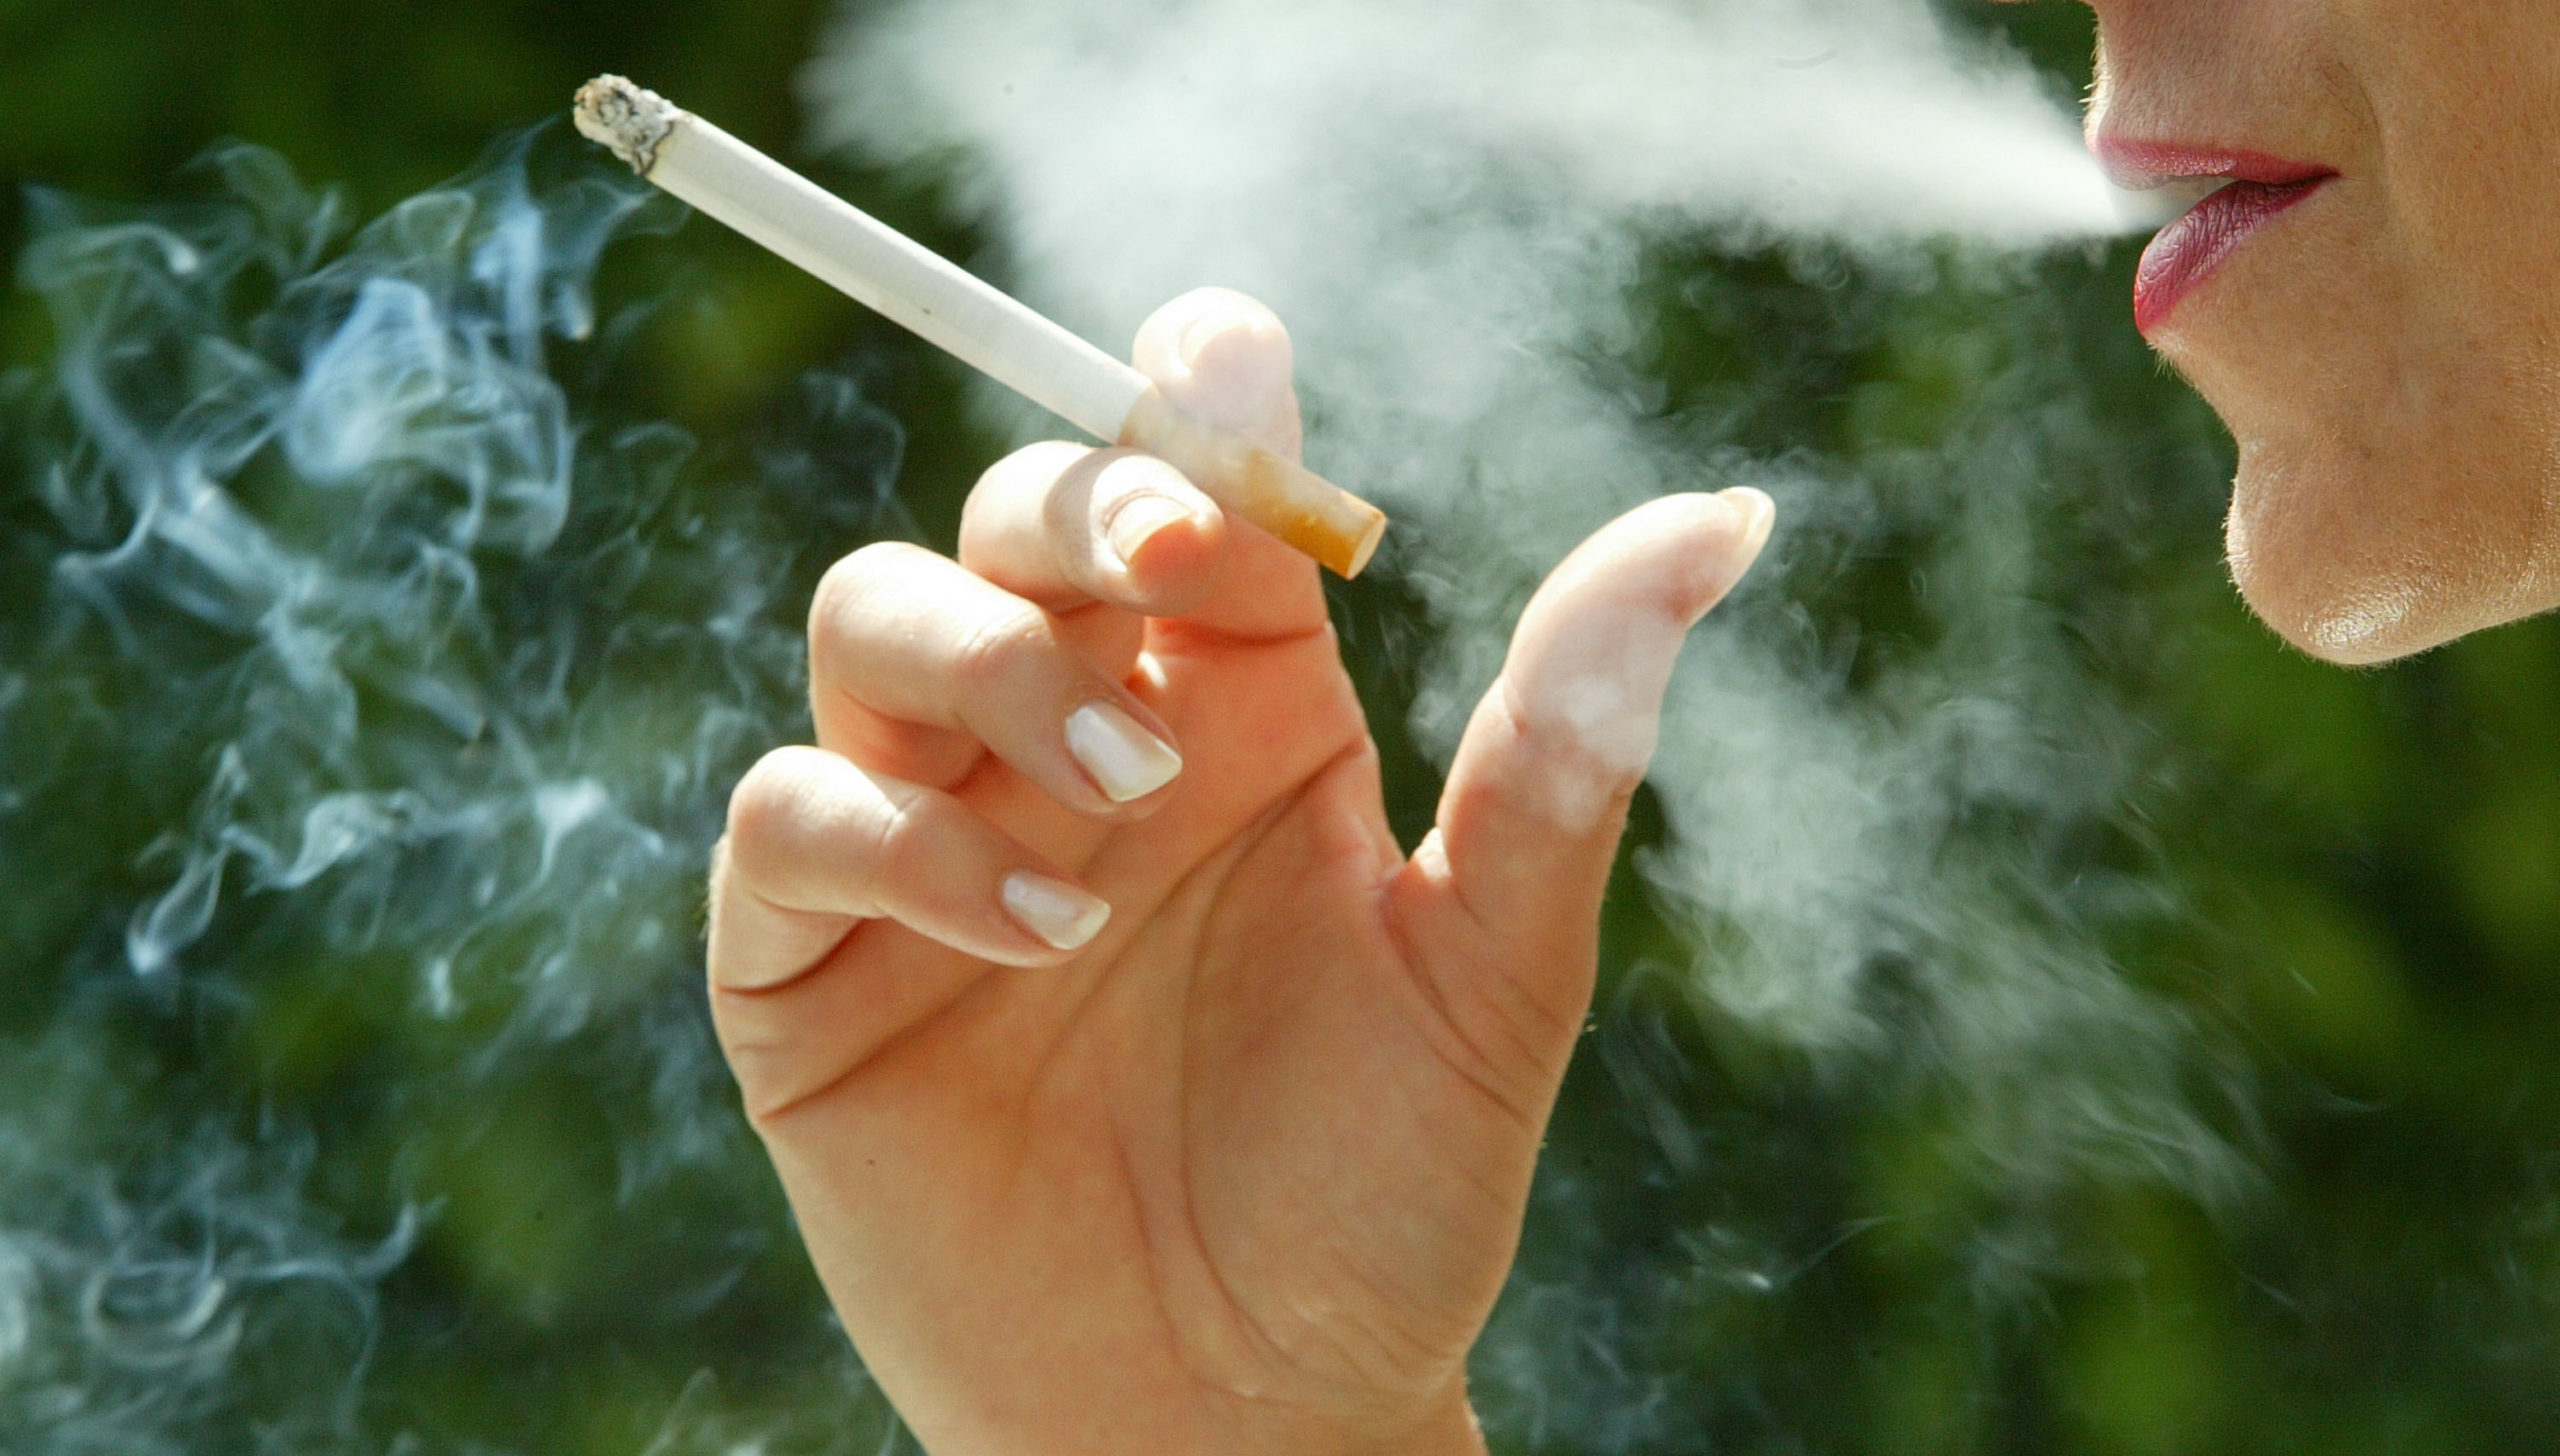 Παρίσι-Η δήμαρχος απαγόρευσε το τσιγάρο σε πάρκο